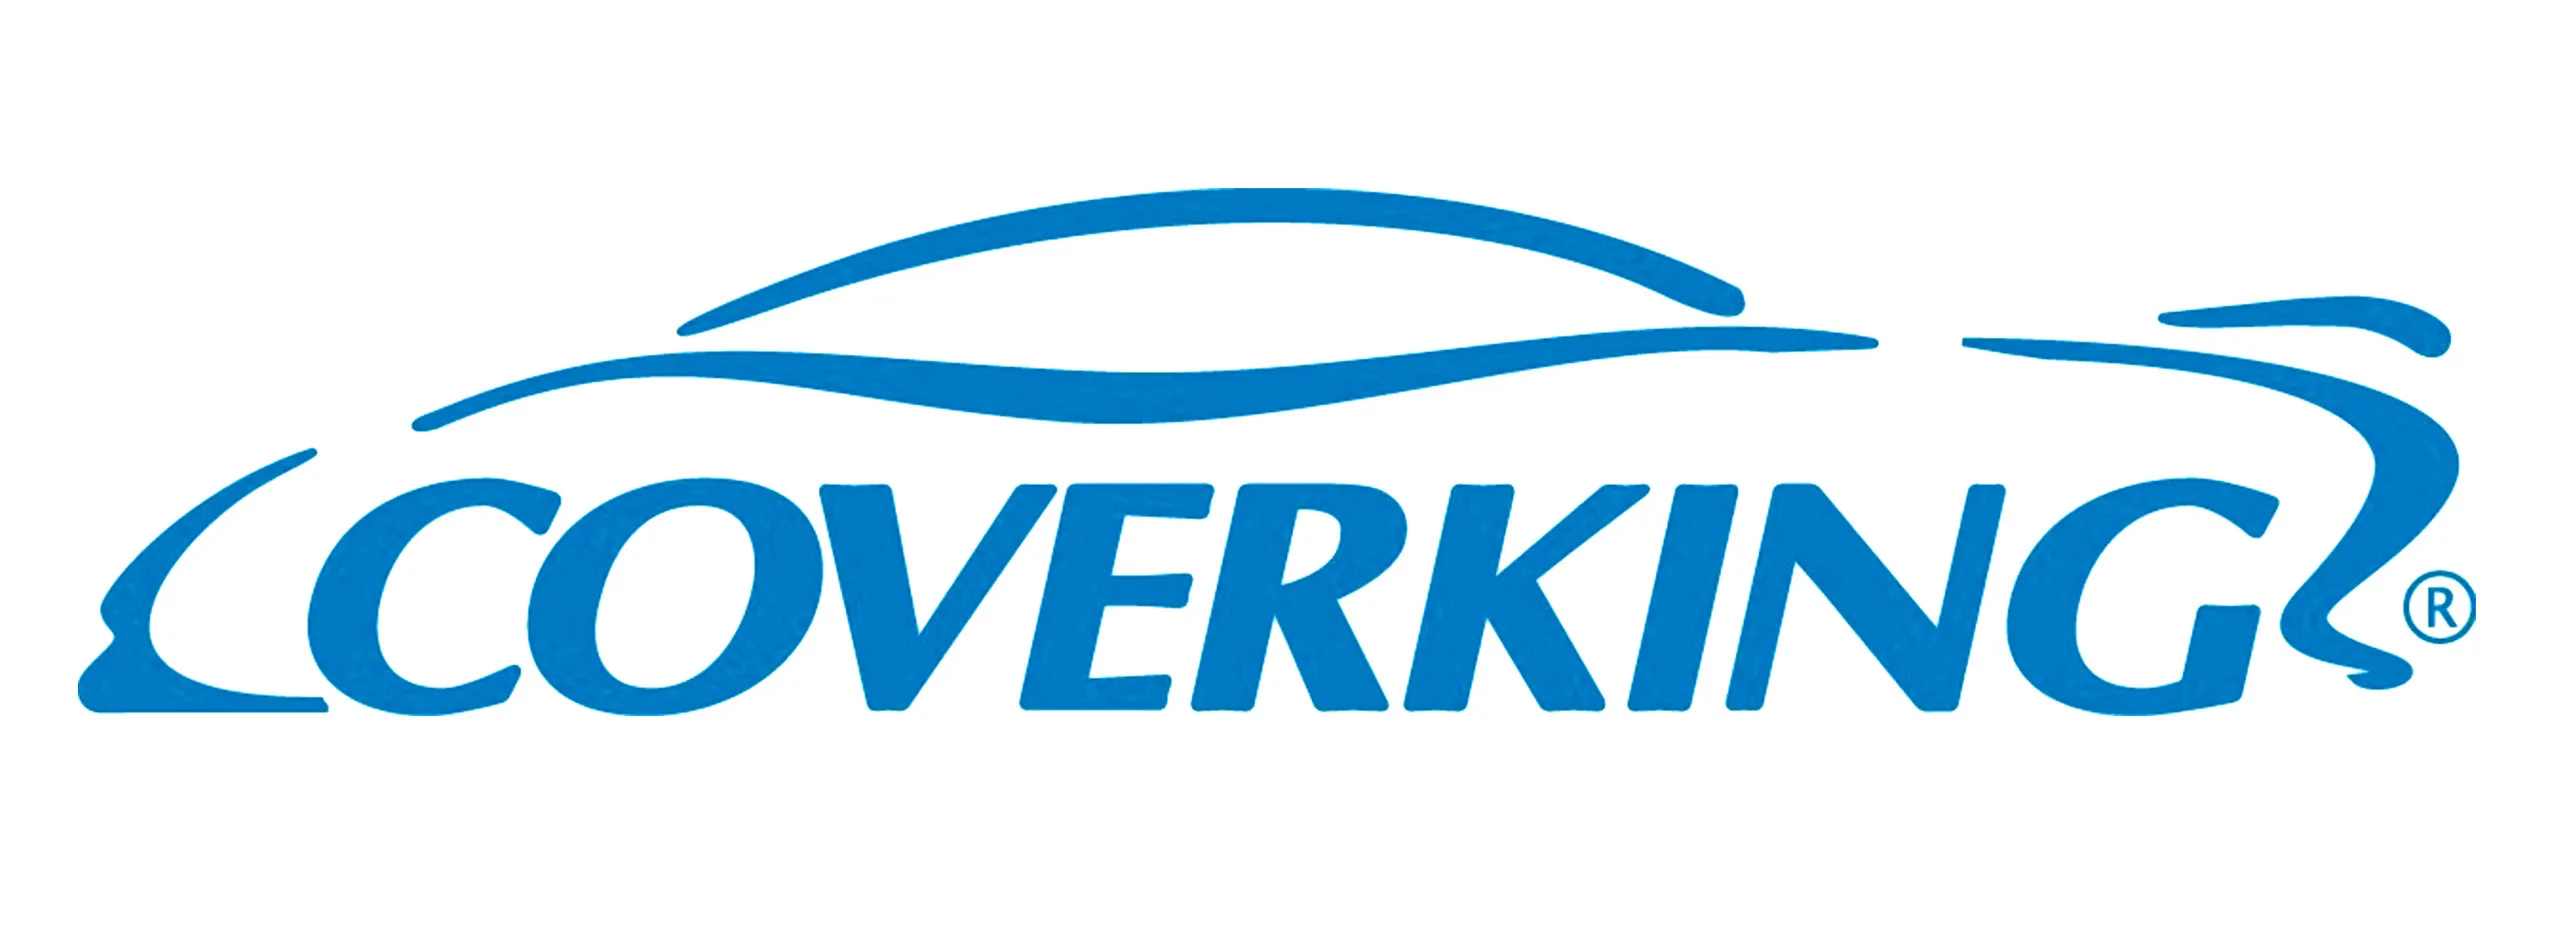 Coverking logo